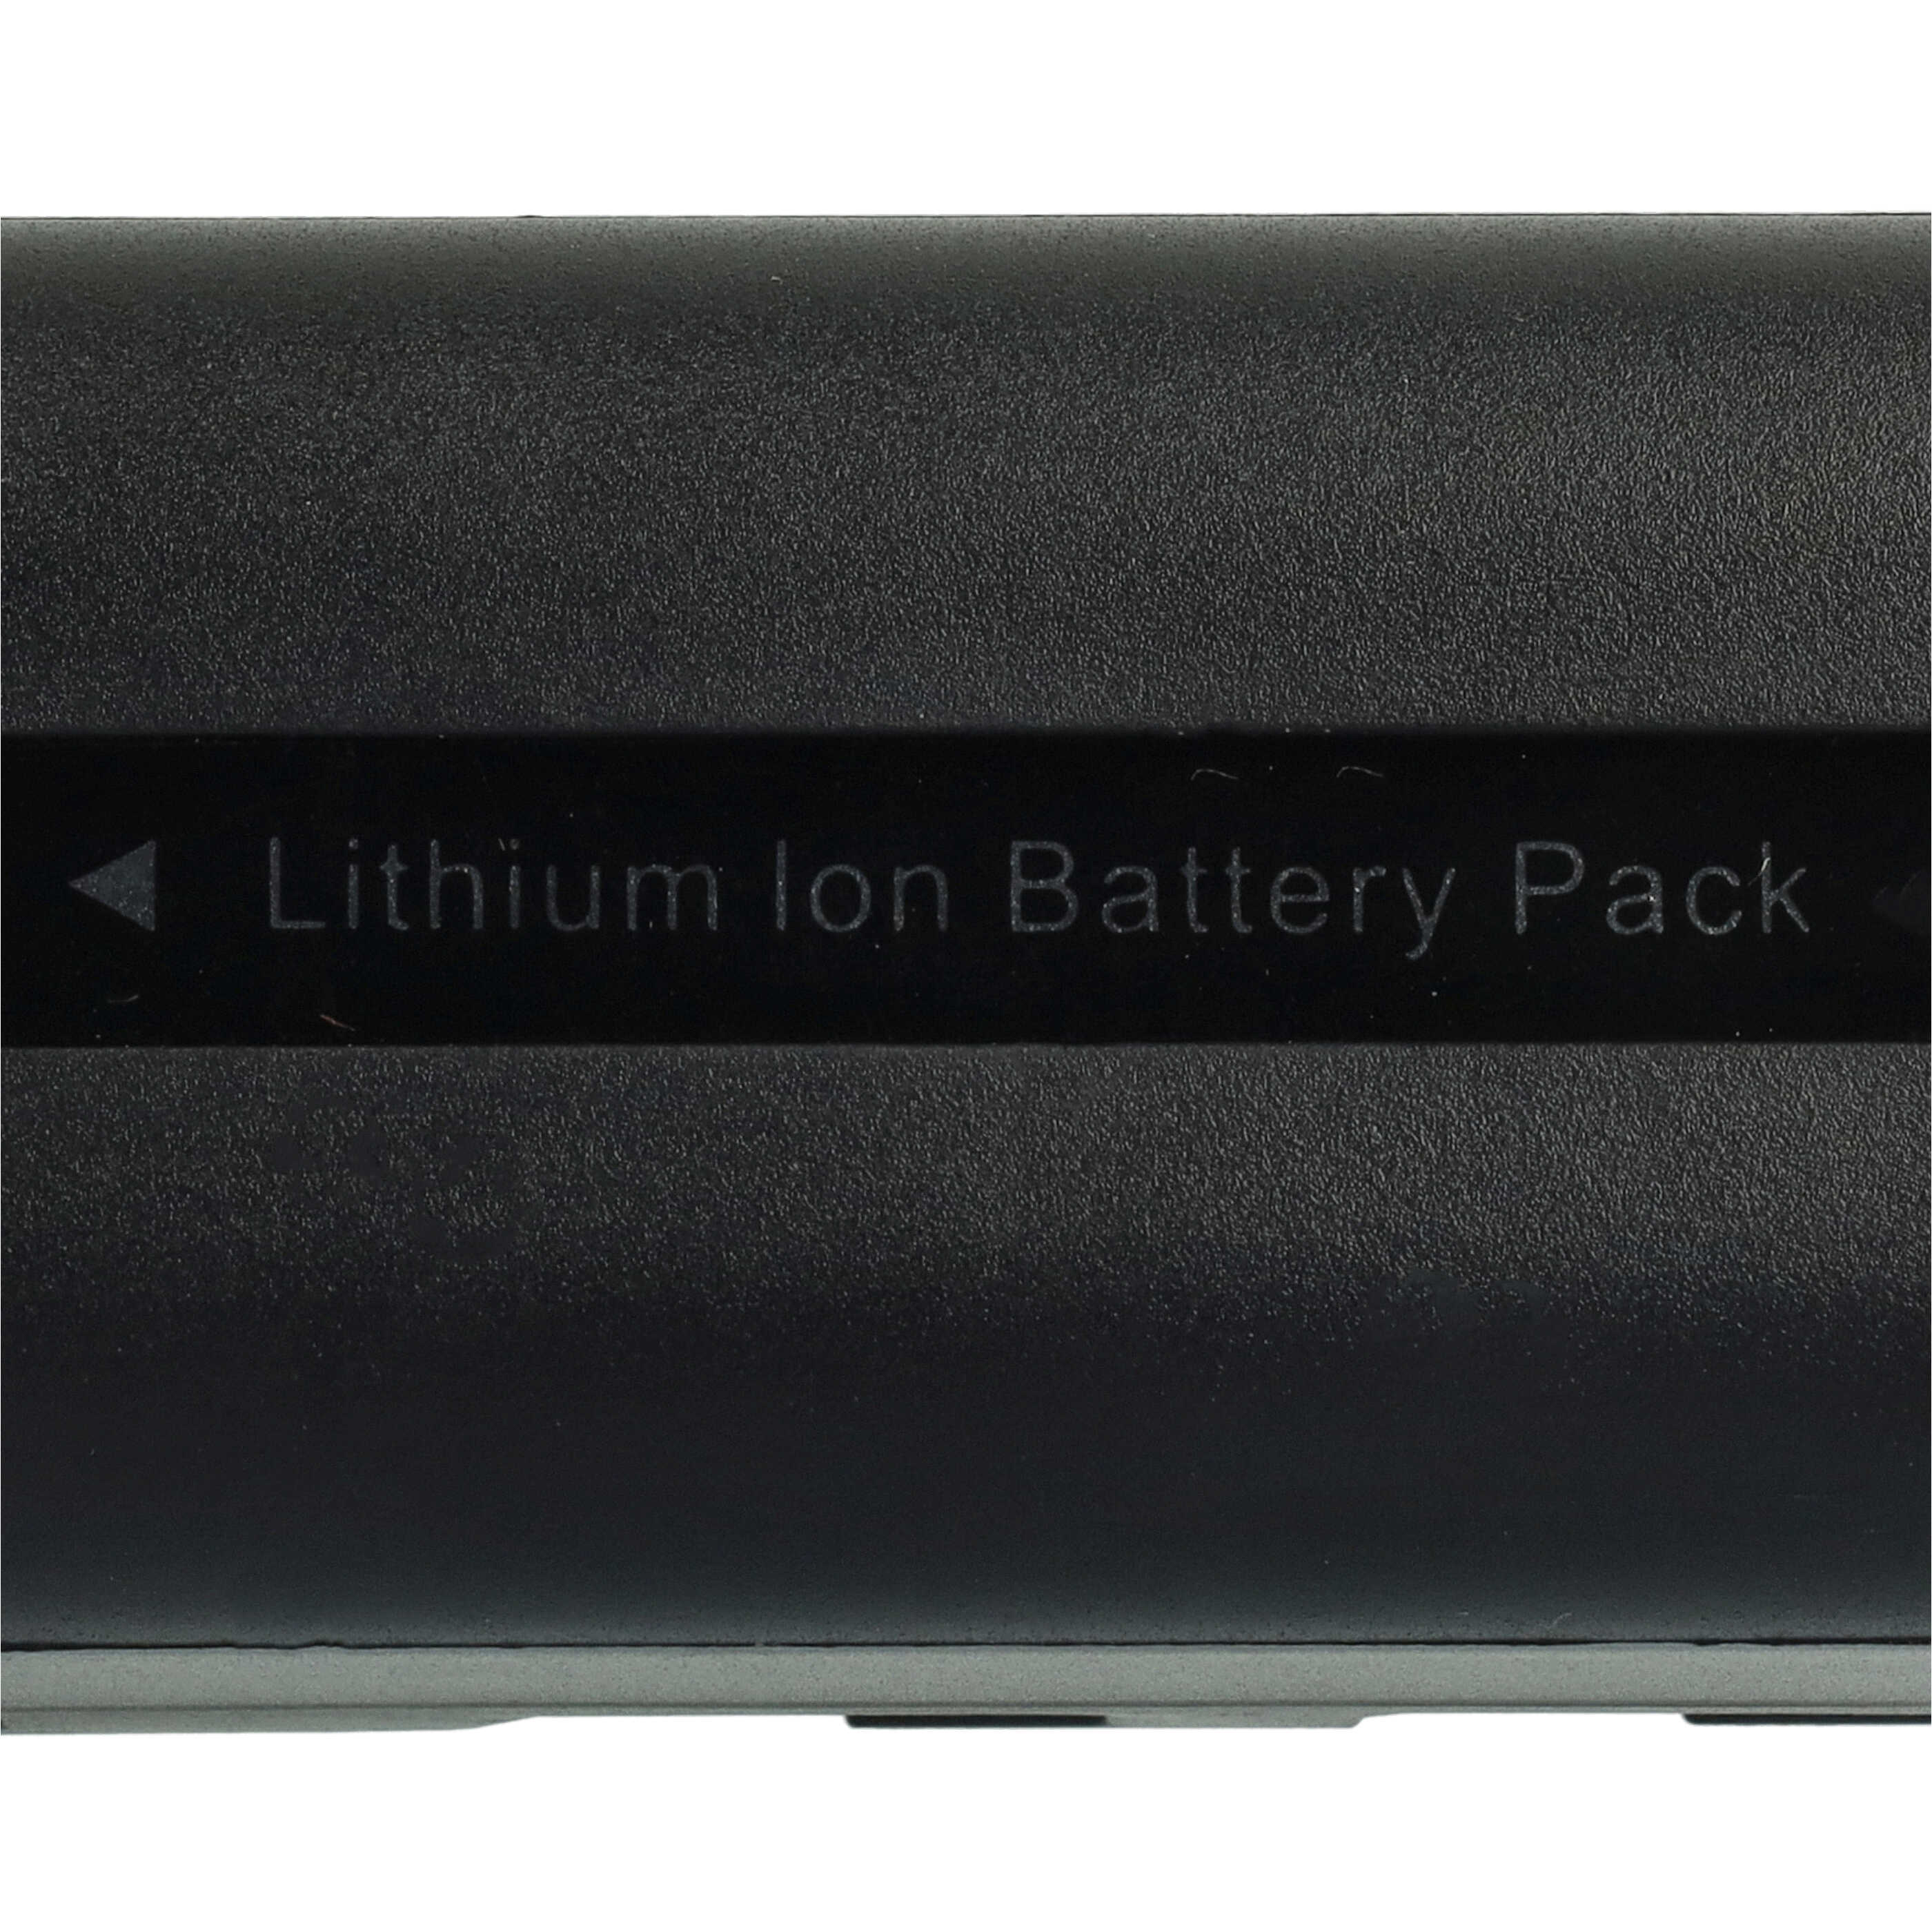 Batterie remplace Samsung SB-LSM80, SB-LSM320, SB-LSM160 pour appareil photo - 1640mAh 7,2V Li-ion